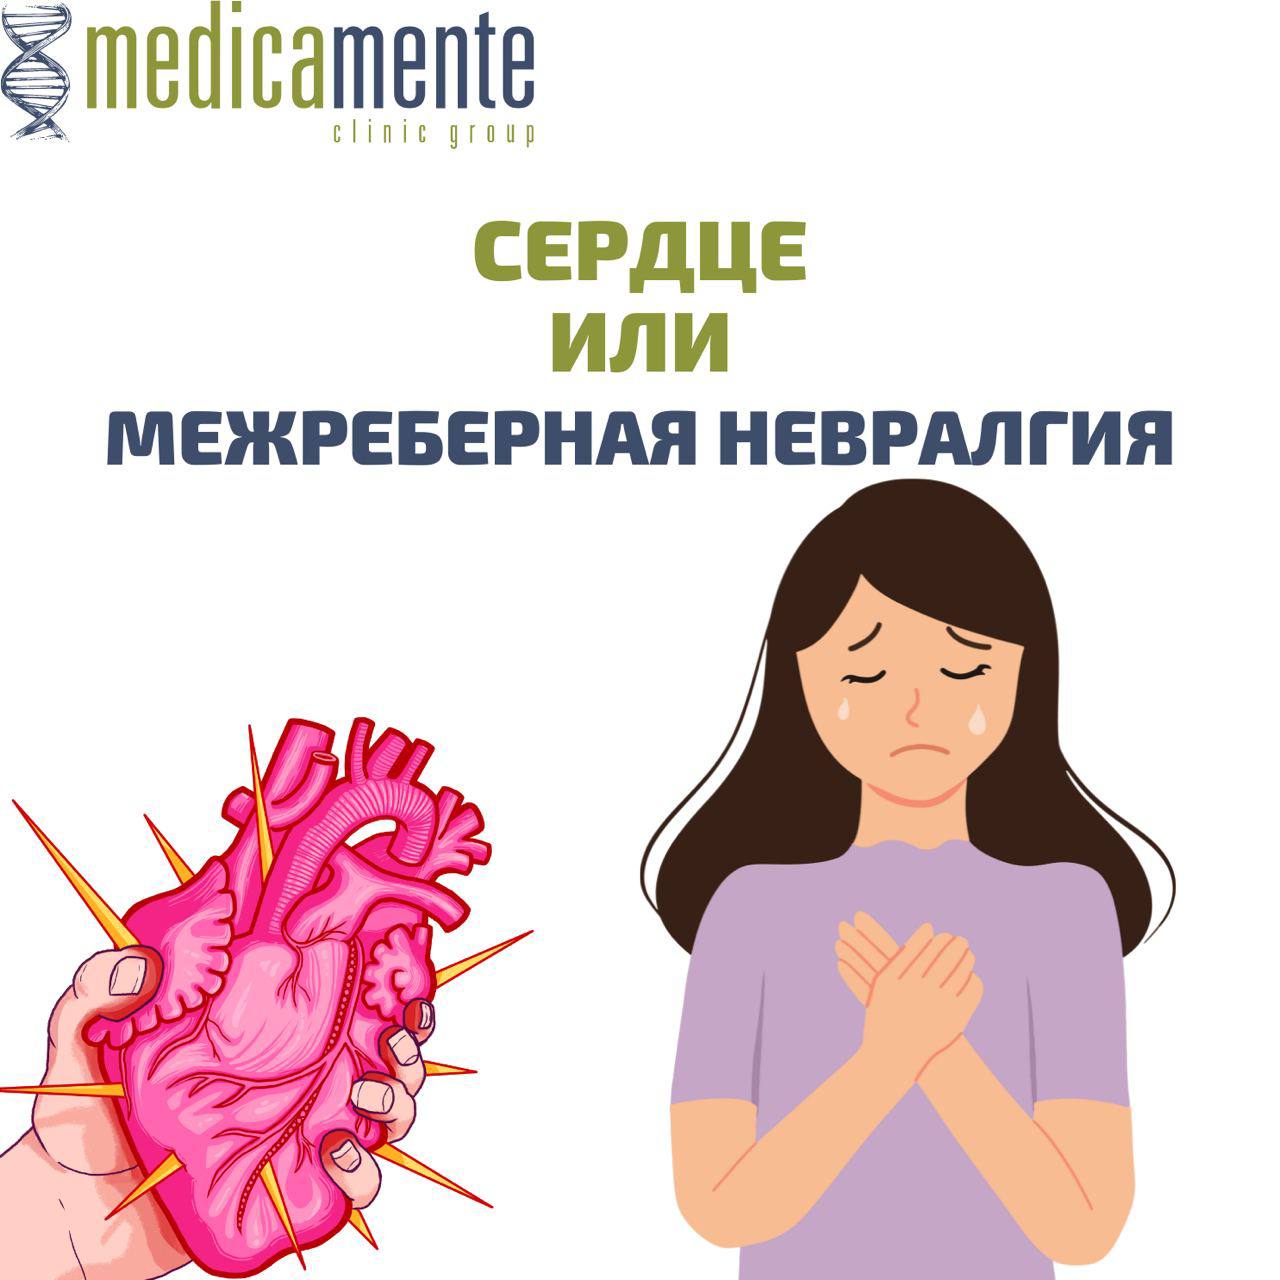 Межреберная невралгия - Клиника в Праге MEDICA MENTE